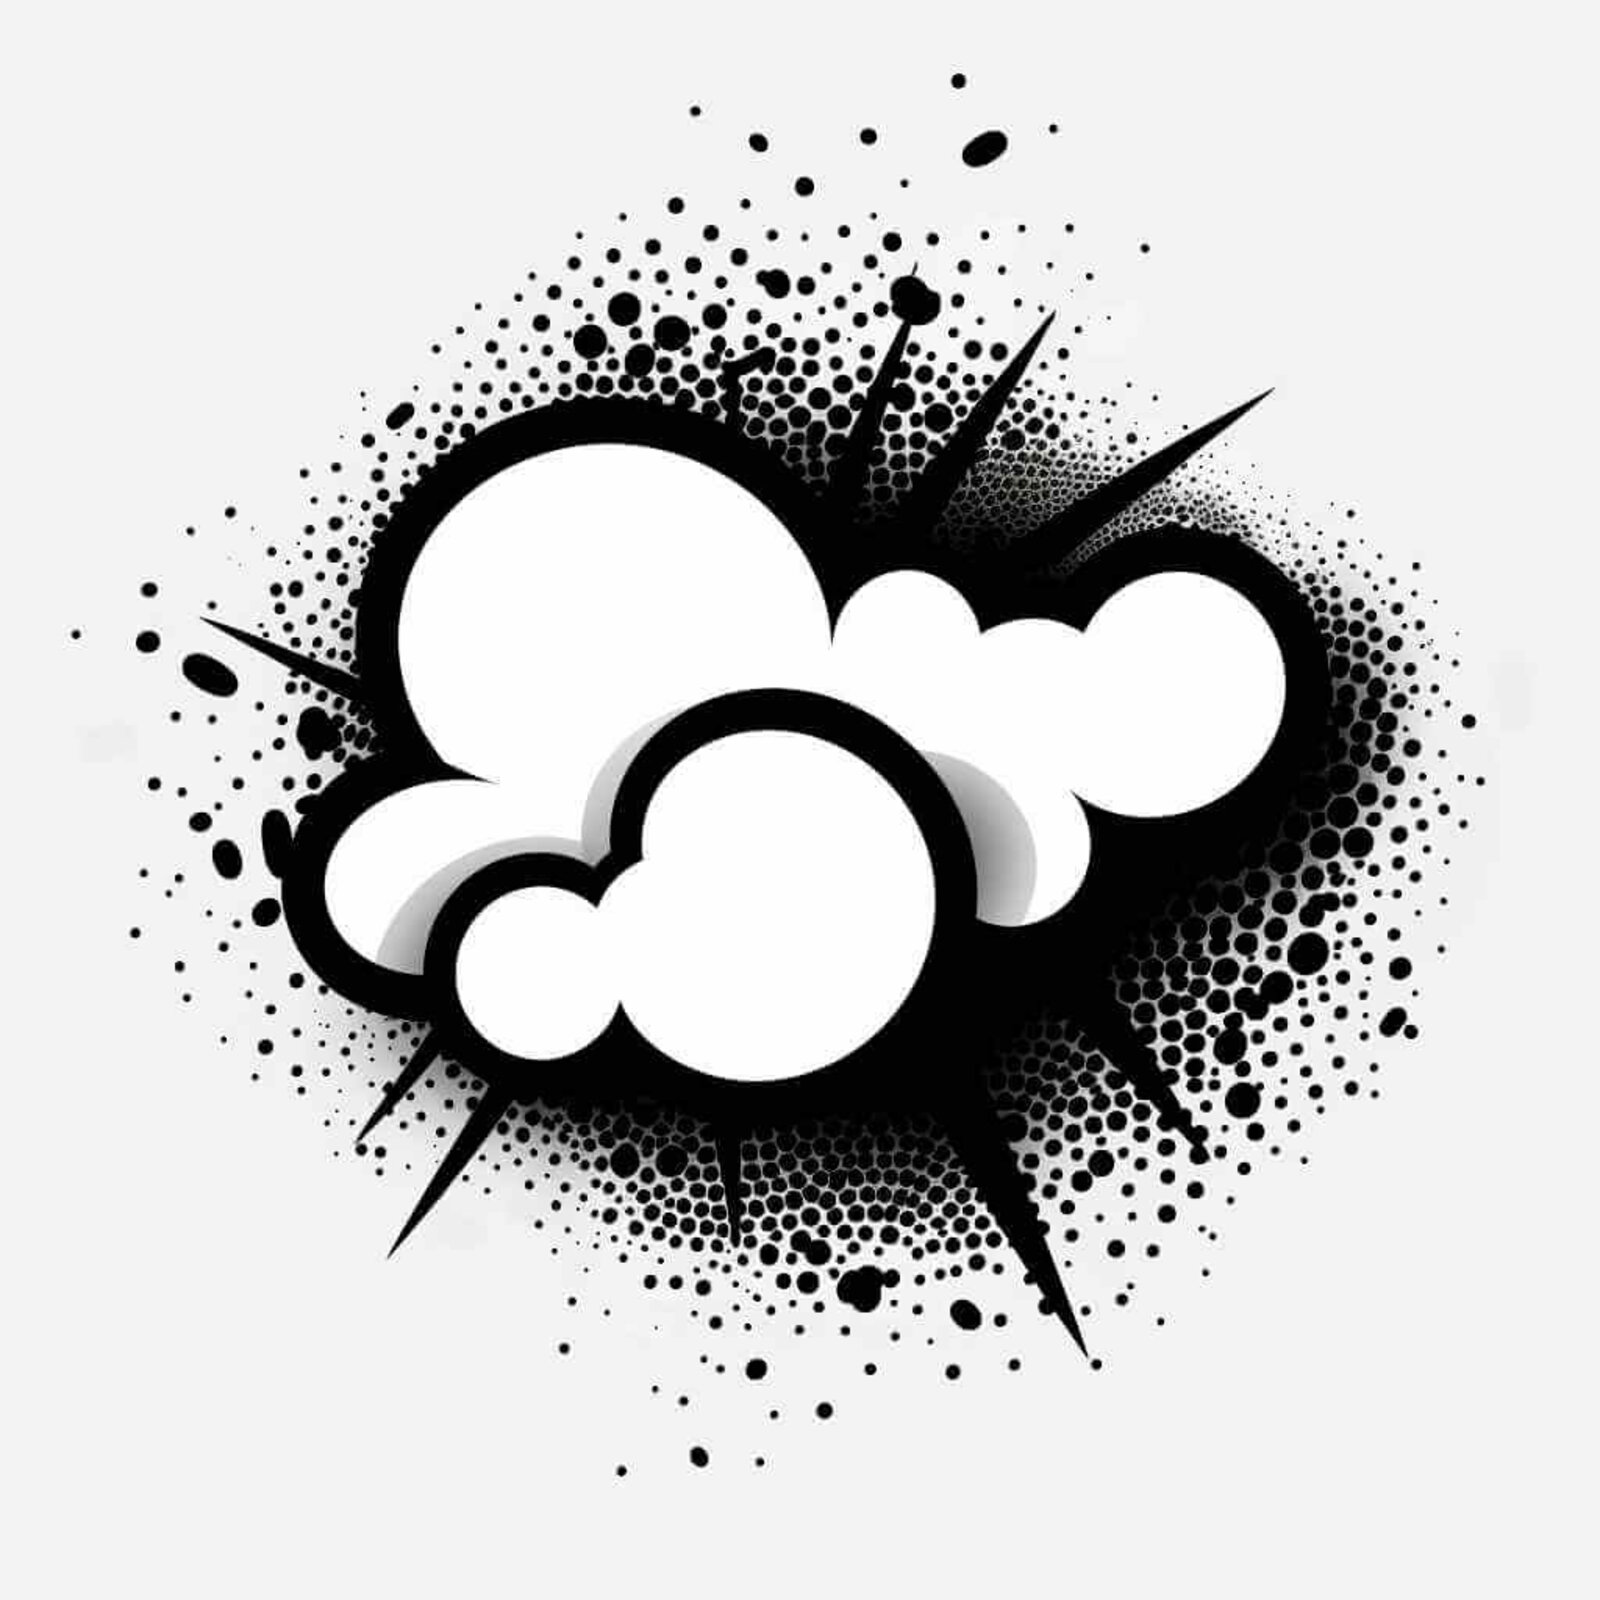 Vektor-Grafik eines Wolken-Symbols